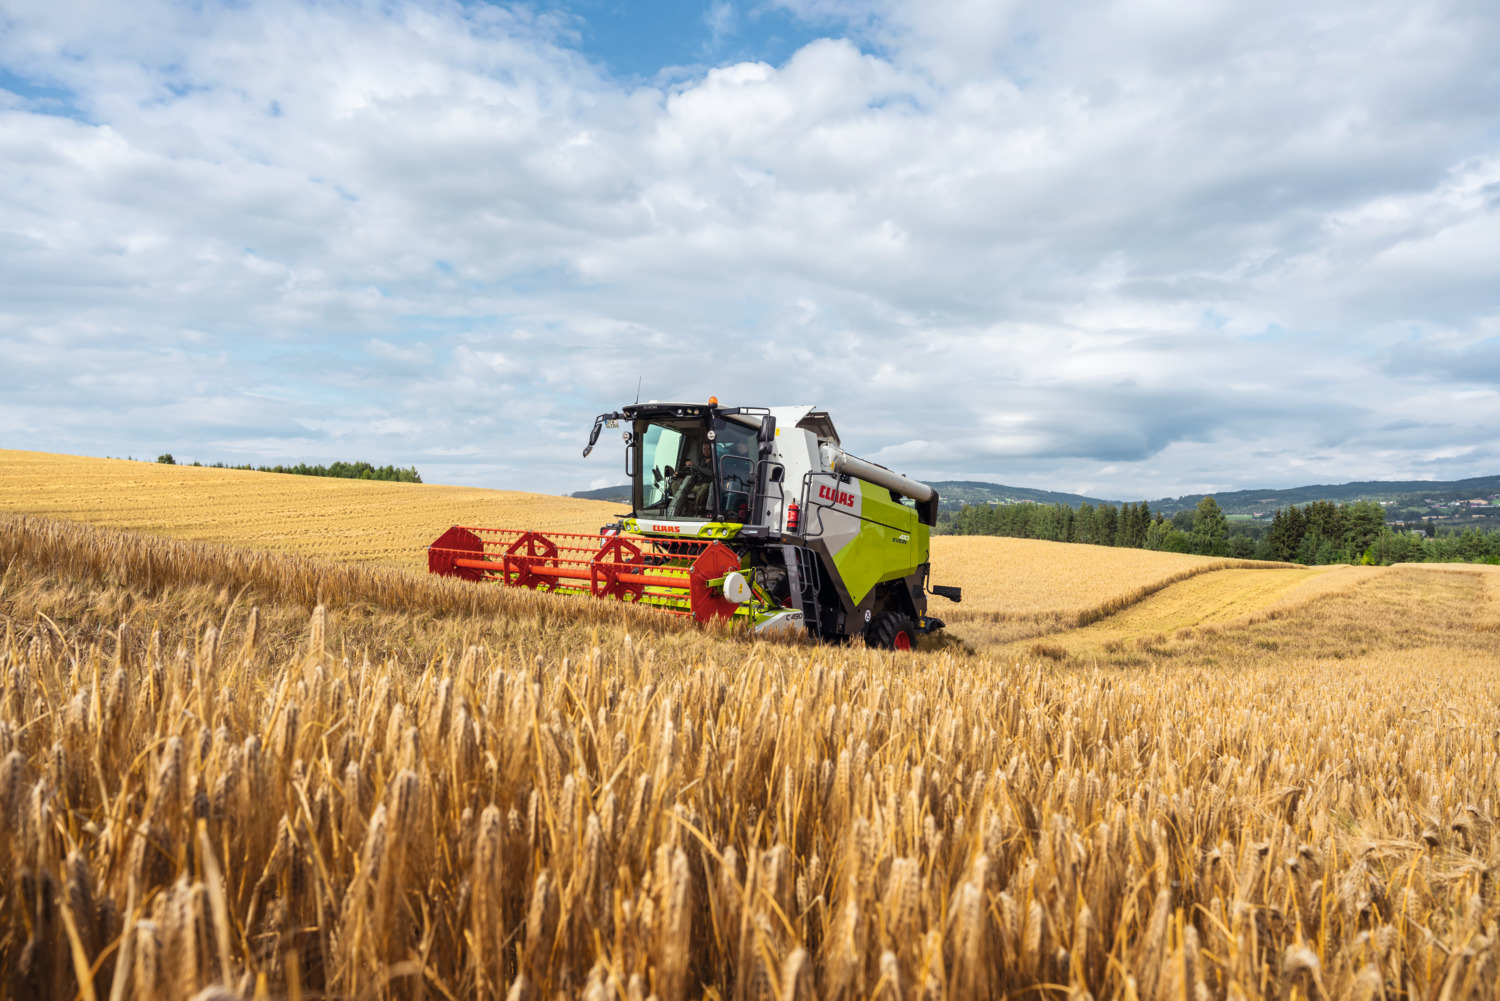 Claas introduceert nieuwe boerenmaaidorser | LandbouwMechanisatie